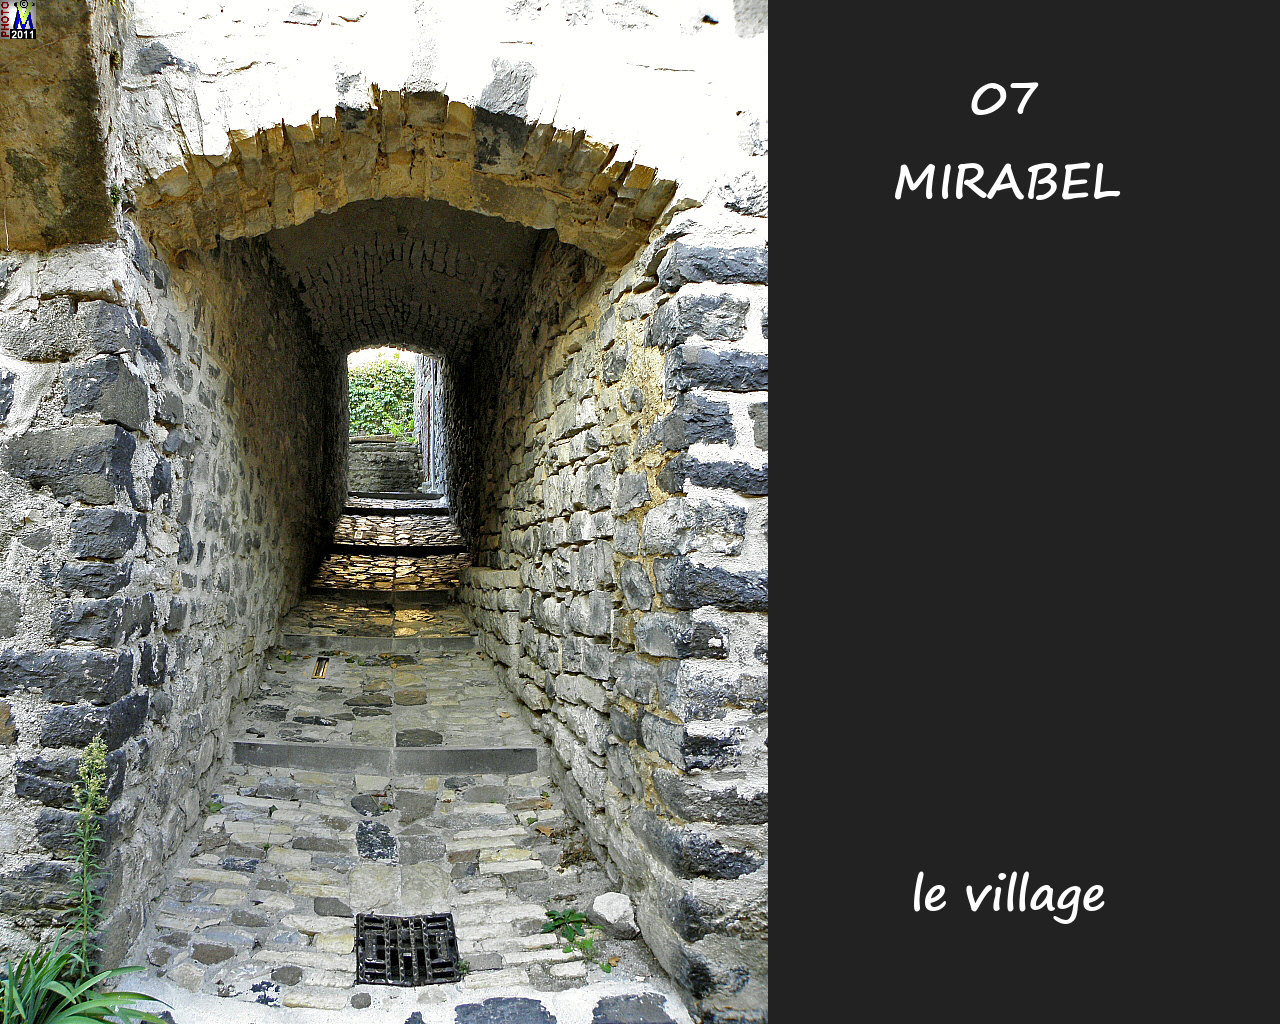 07MIRABEL_village_160.jpg